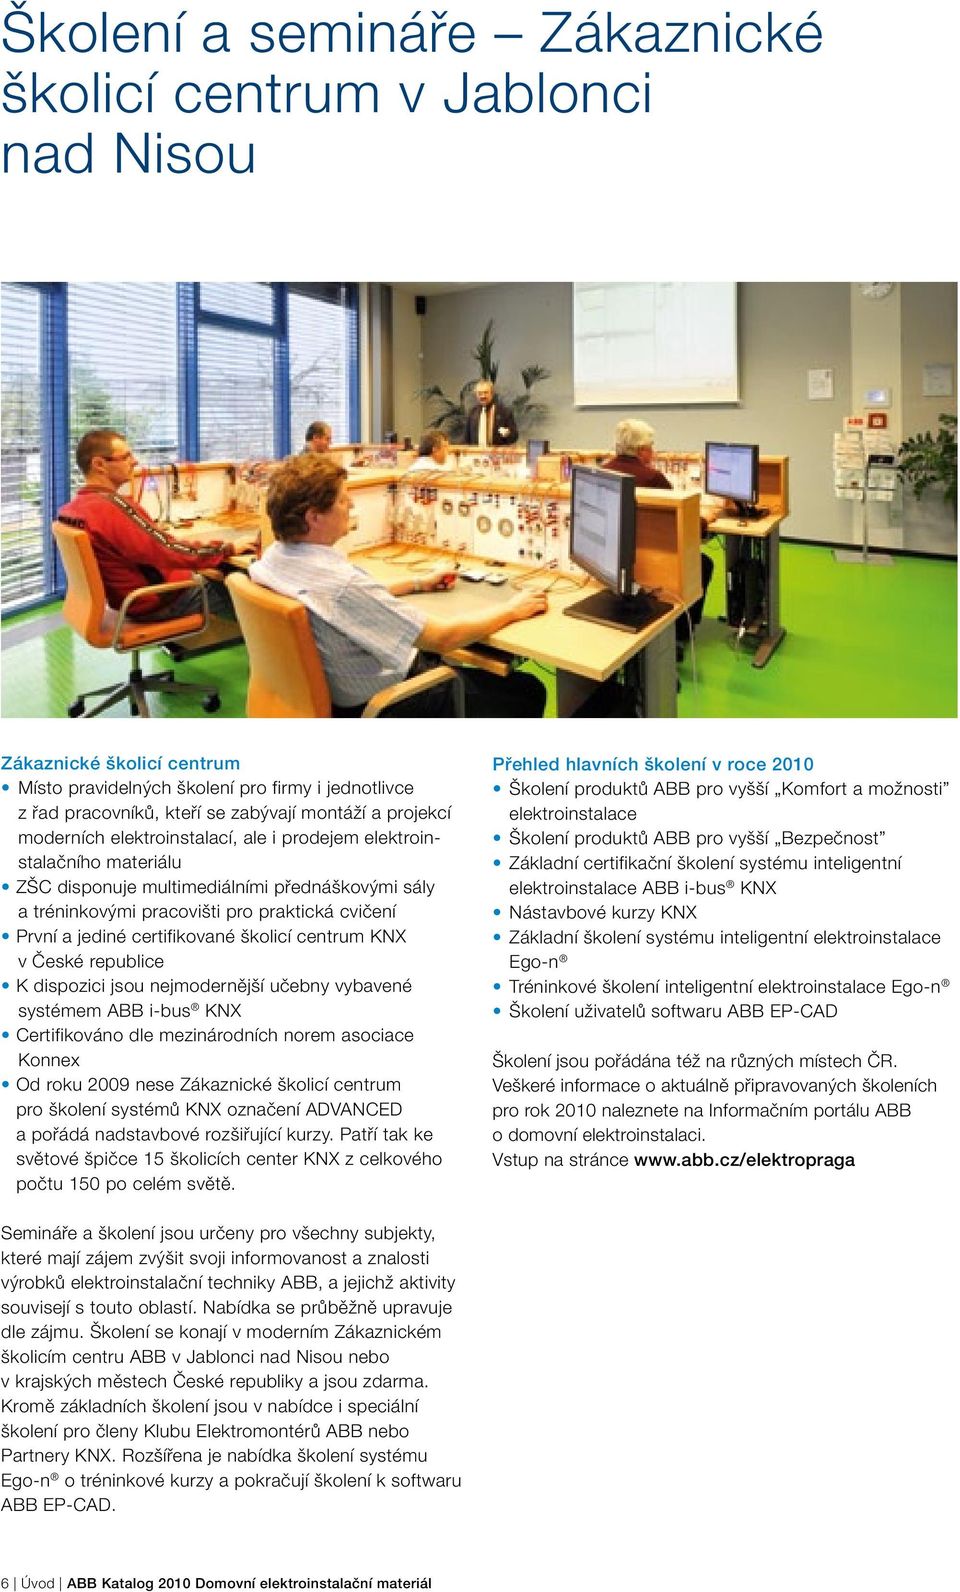 školicí centrum KNX v České republice K dispozici jsou nejmodernější učebny vybavené systémem ABB i-bus KNX Certifikováno dle mezinárodních norem asociace Konnex Od roku 2009 nese Zákaznické školicí